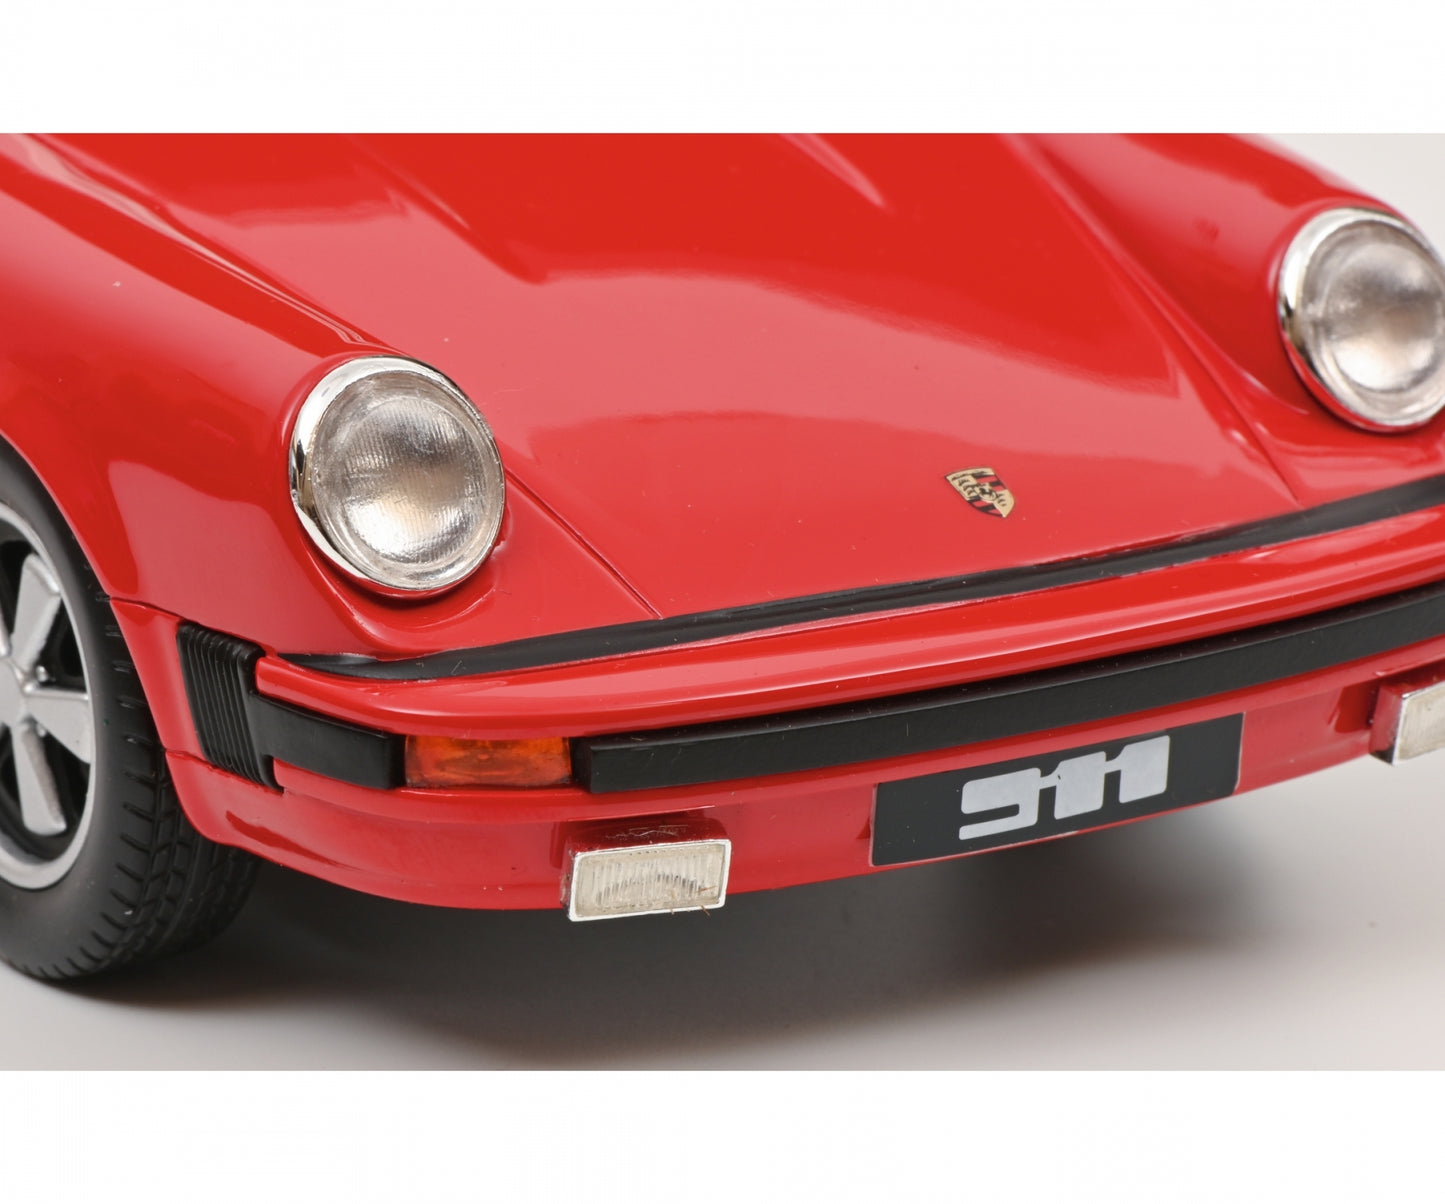 Schuco 1:18 Porsche 911 Targa 1977 Red 450048700